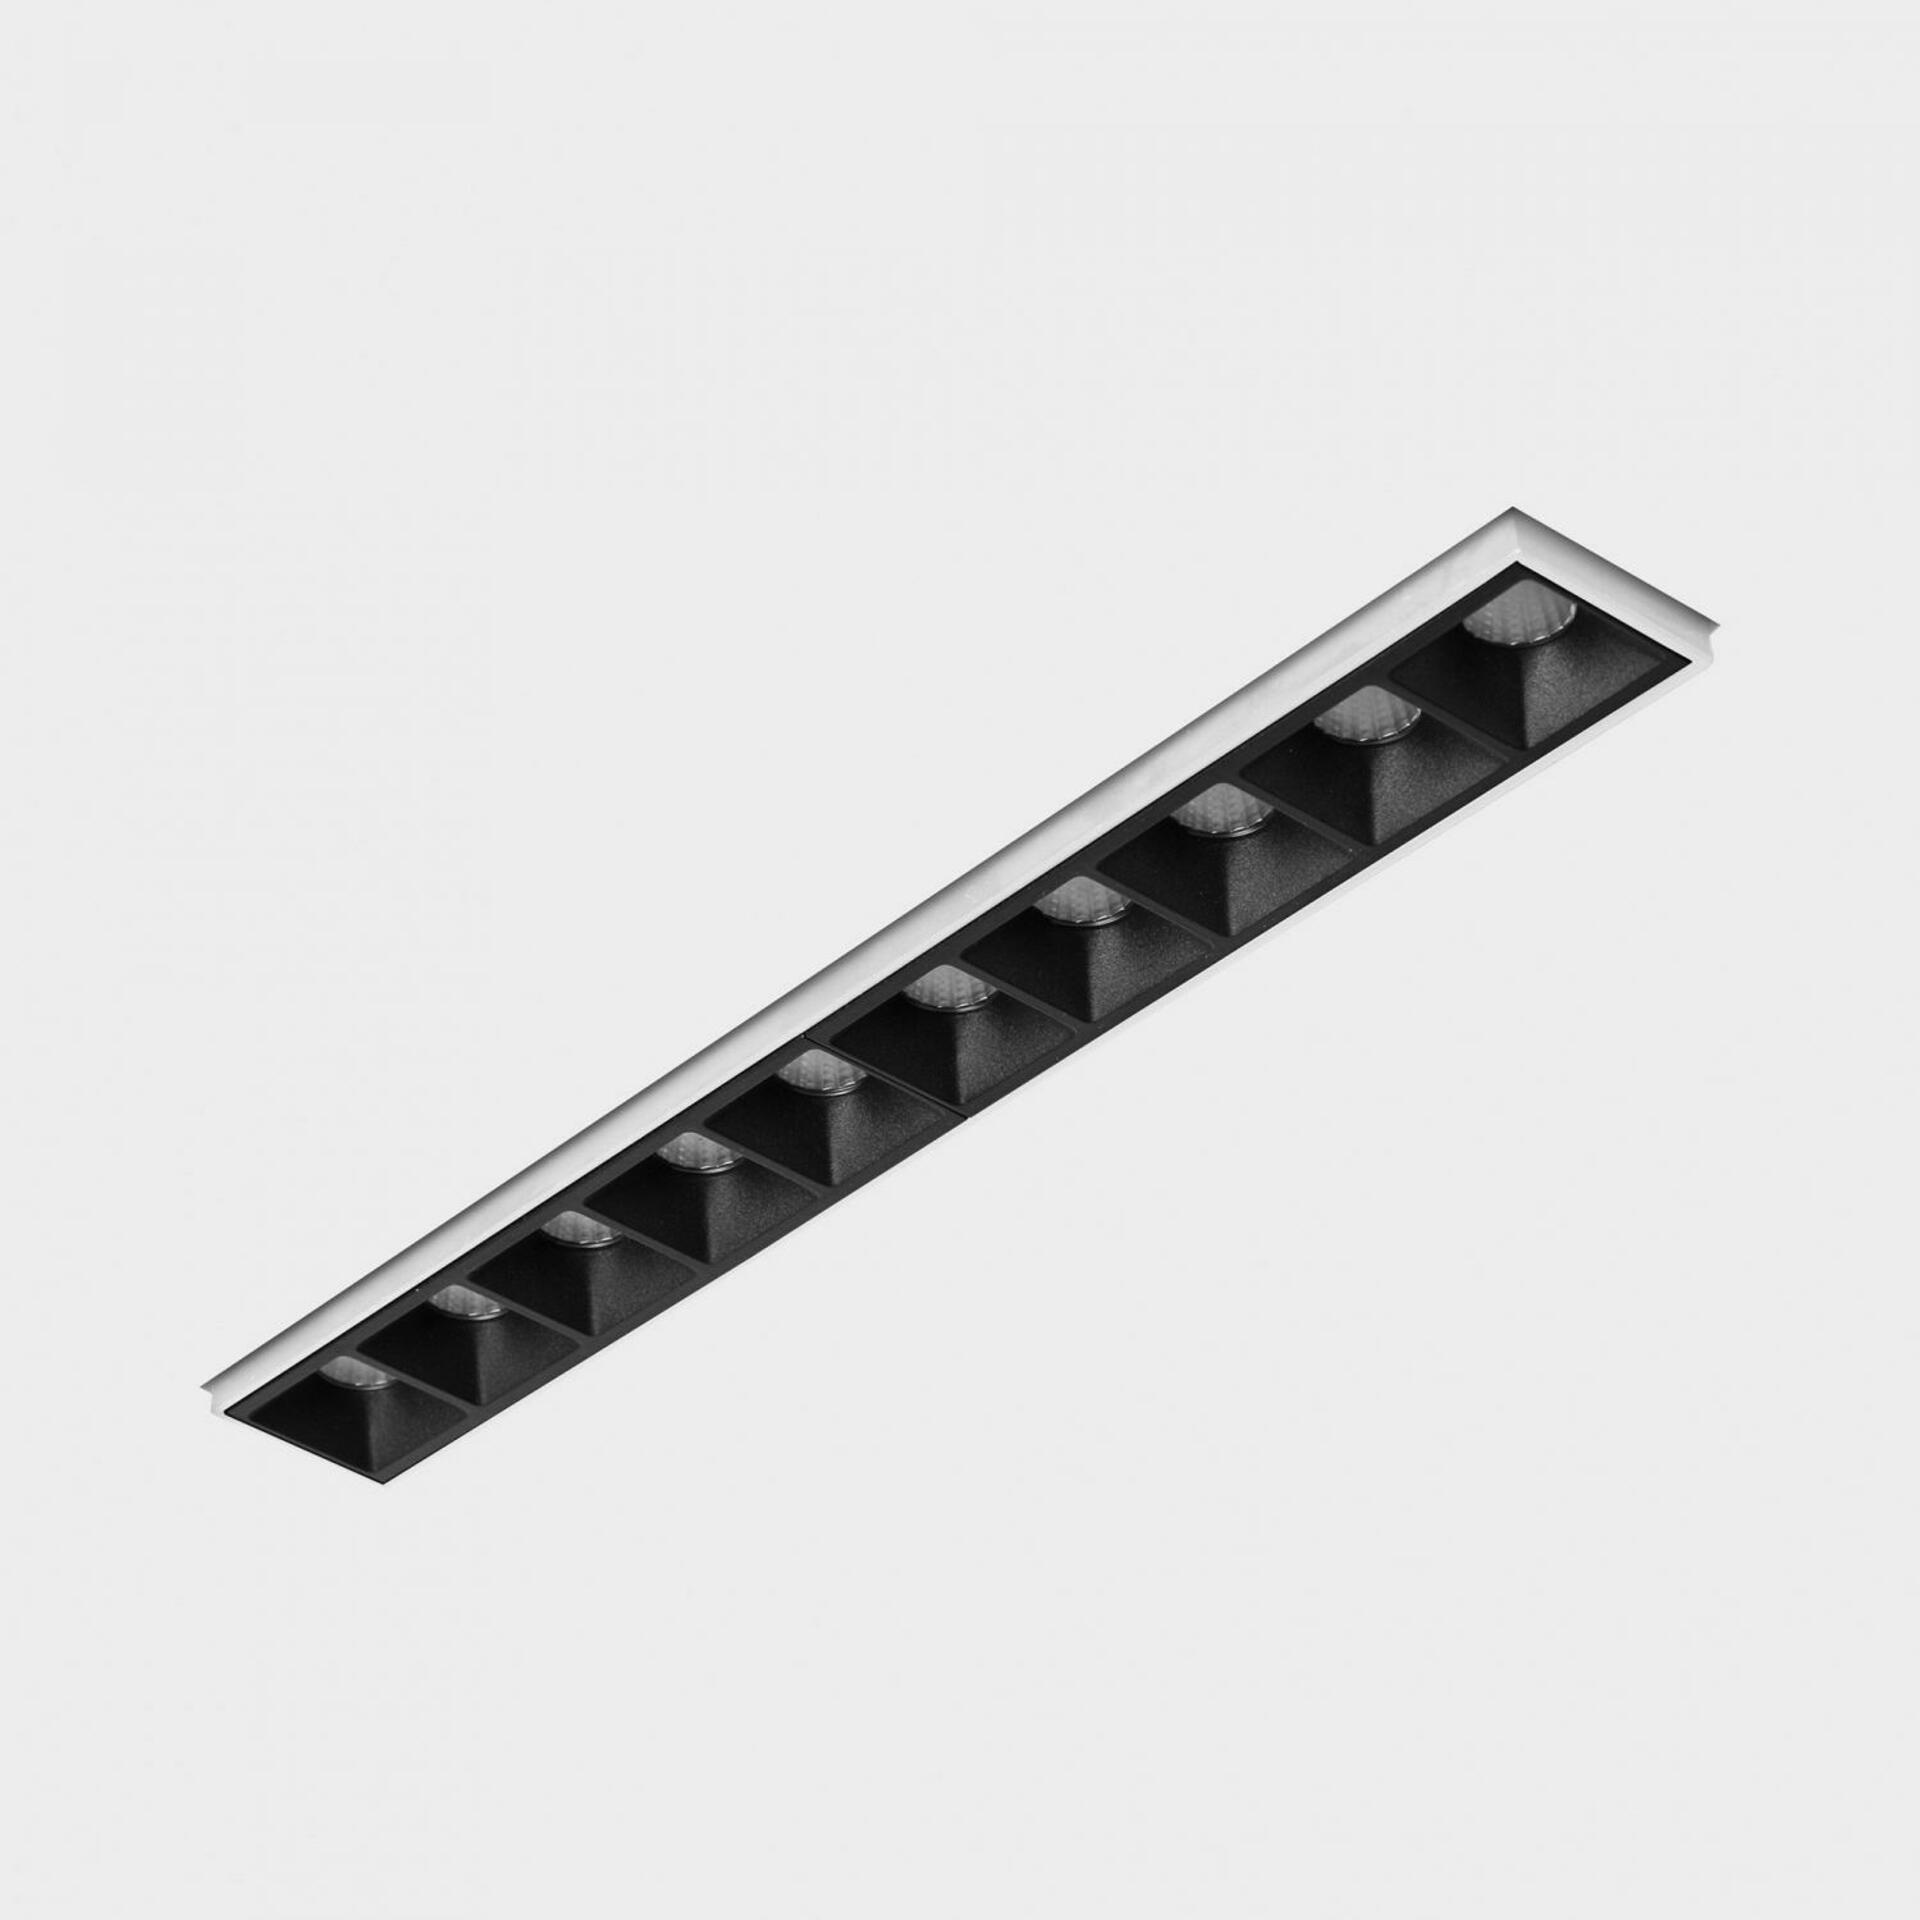 KOHL LIGHTING KOHL-Lighting NSES bezrámečkové zapuštěné svítidlo 270x35 mm bílá-černá 20 W CRI 90 2700K PUSH